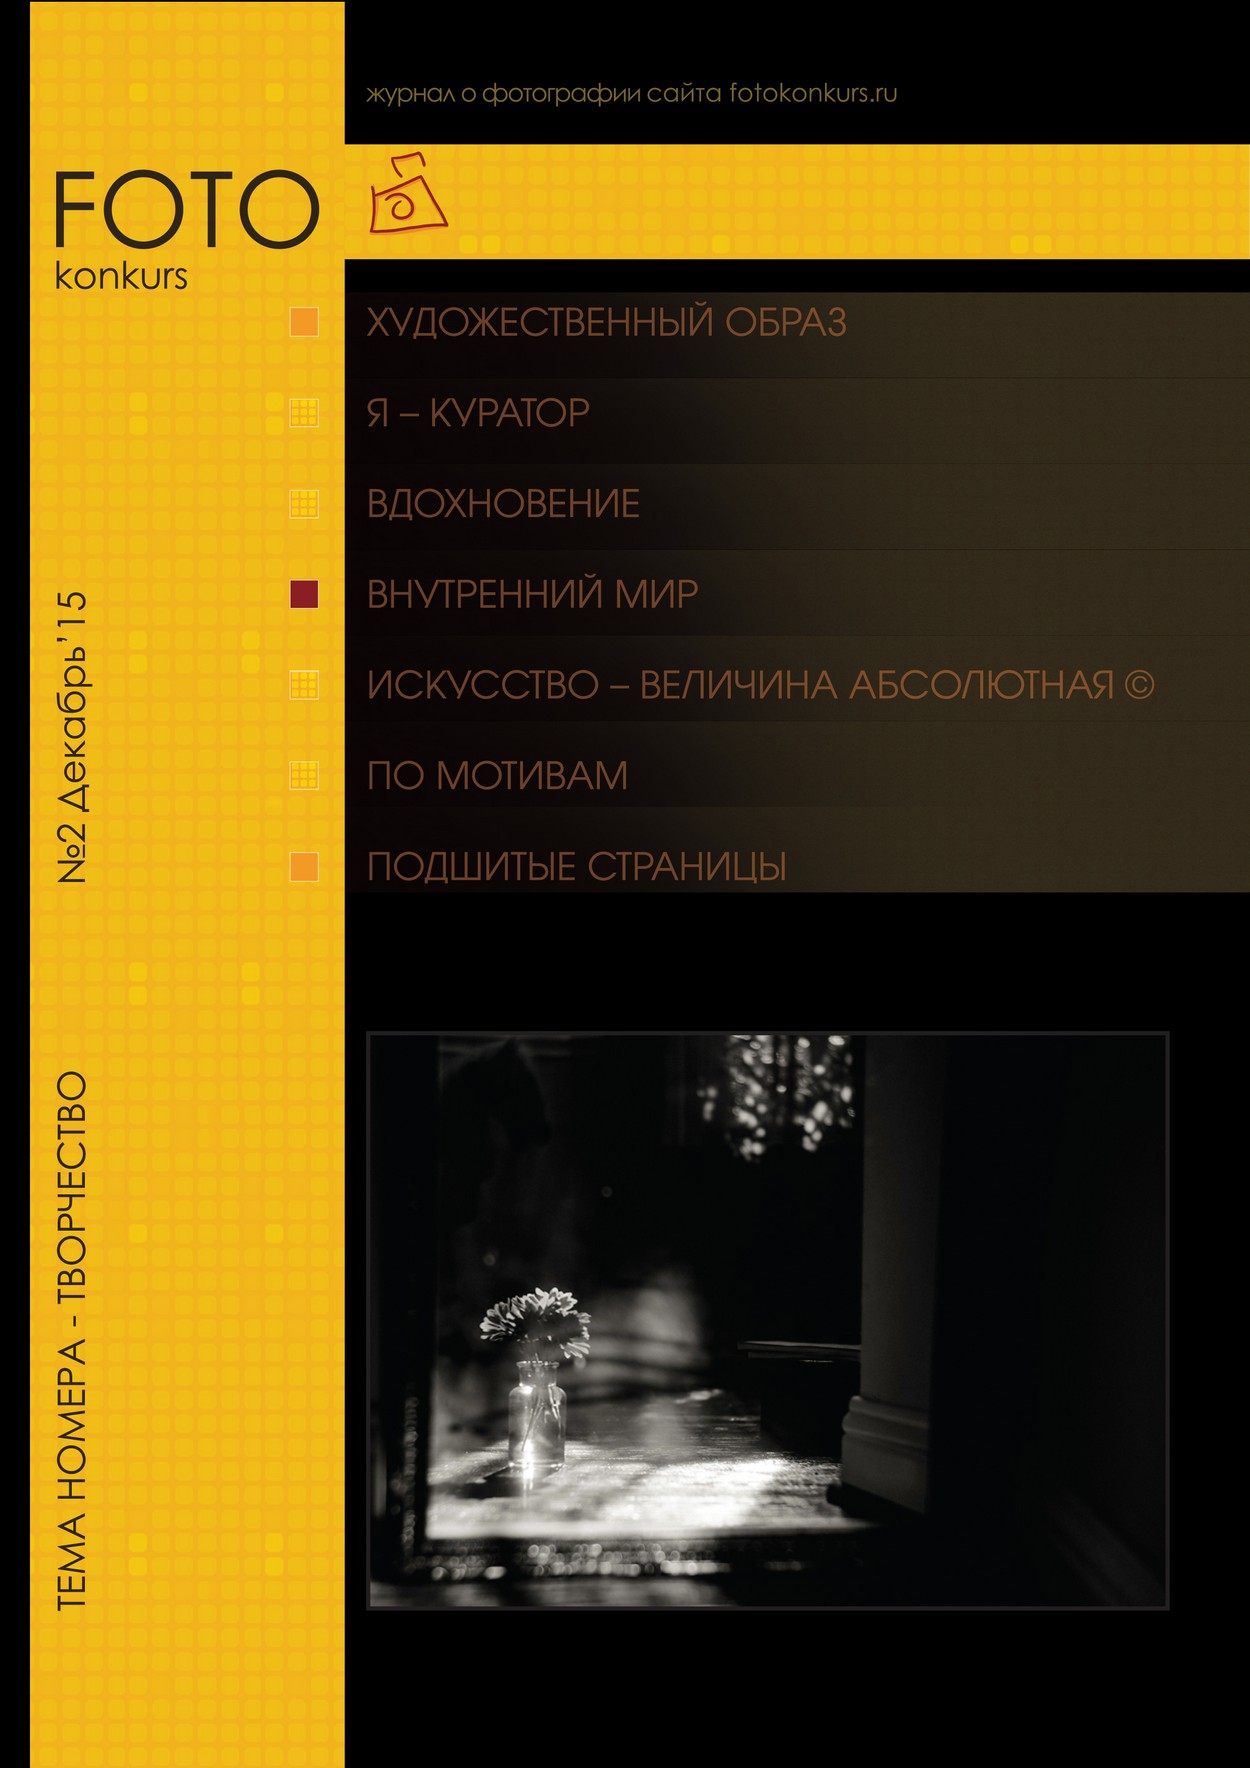 Журнал Фотоконкурс.ру, Выпуск 2, декабрь-2015, страница Обложка